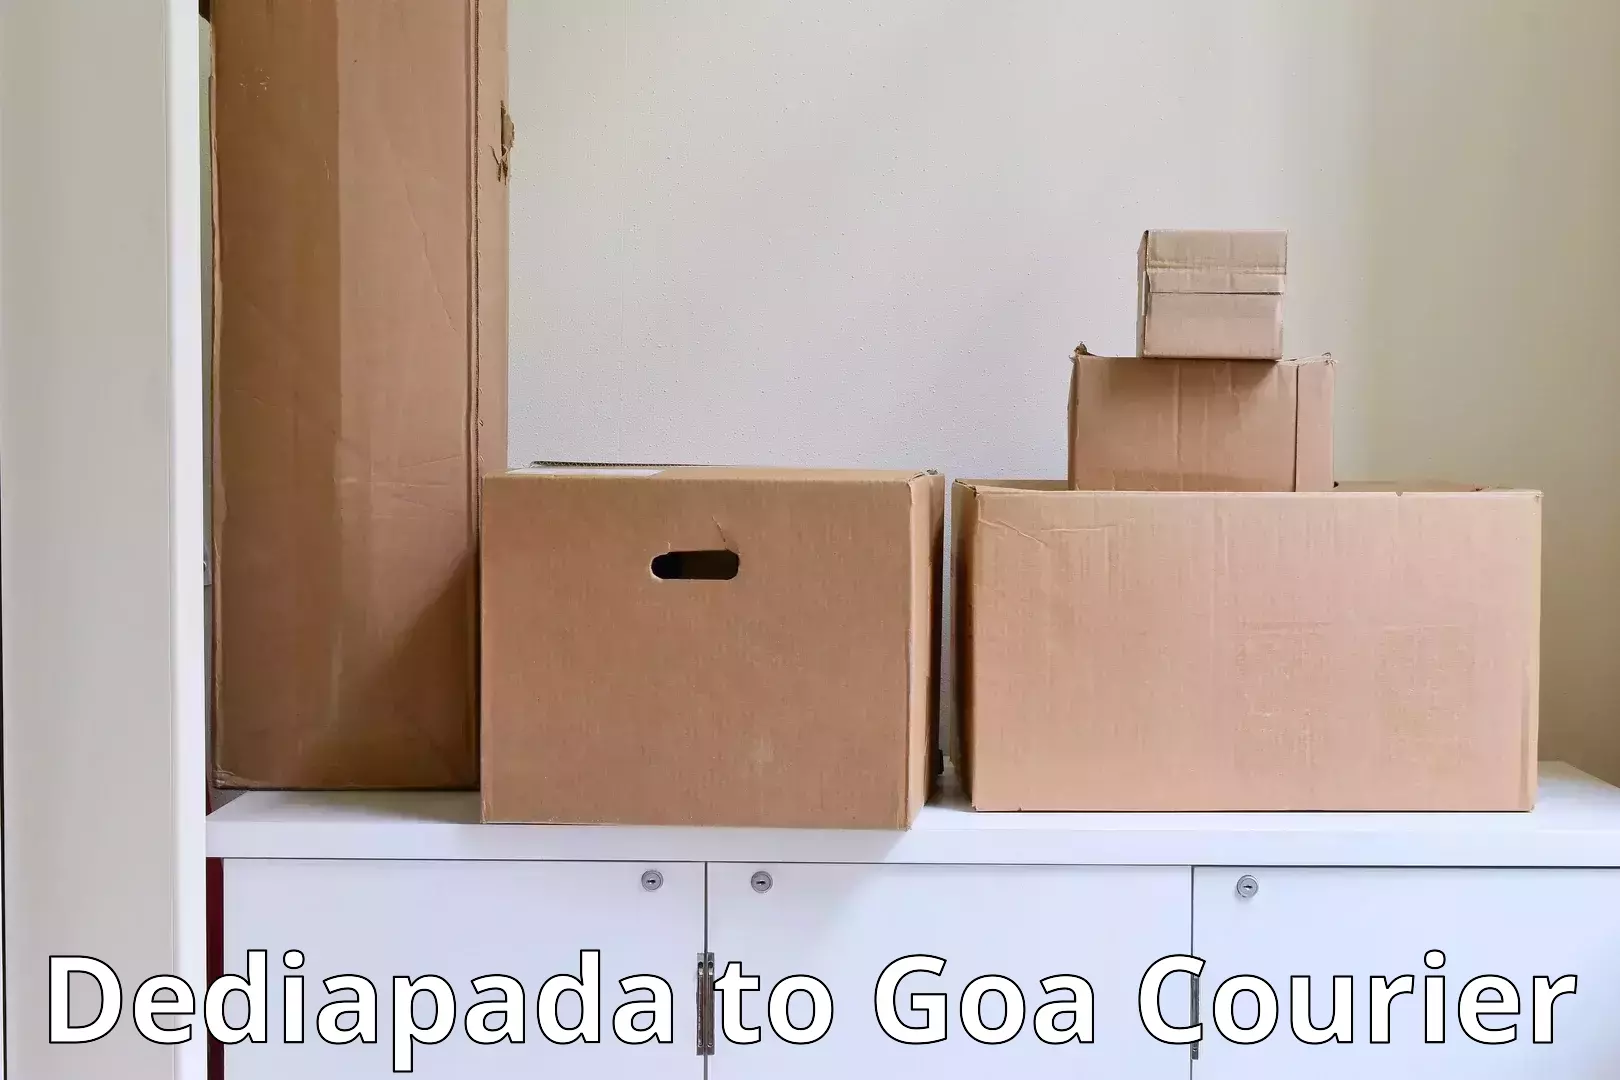 Home relocation services Dediapada to Goa